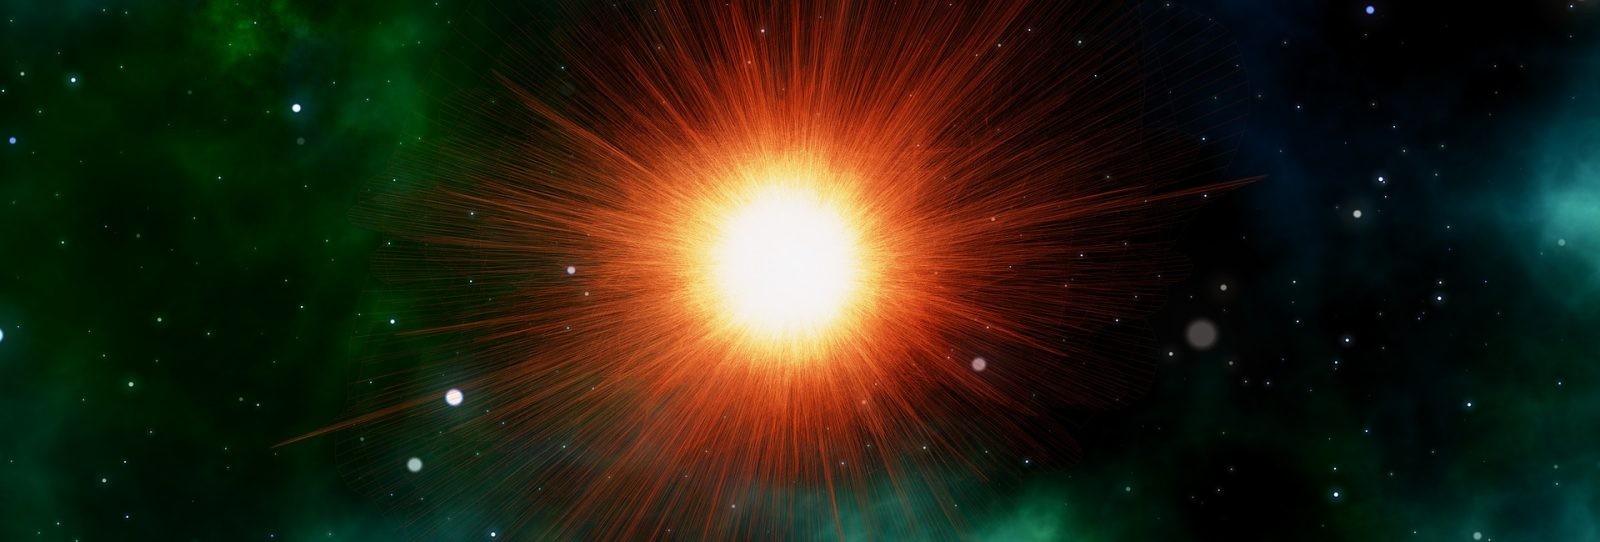 Tak wyglądają szczątki gwiazdy po eksplozji sprzed 11 000 lat. Potężne, gigapikselowe zdjęcie